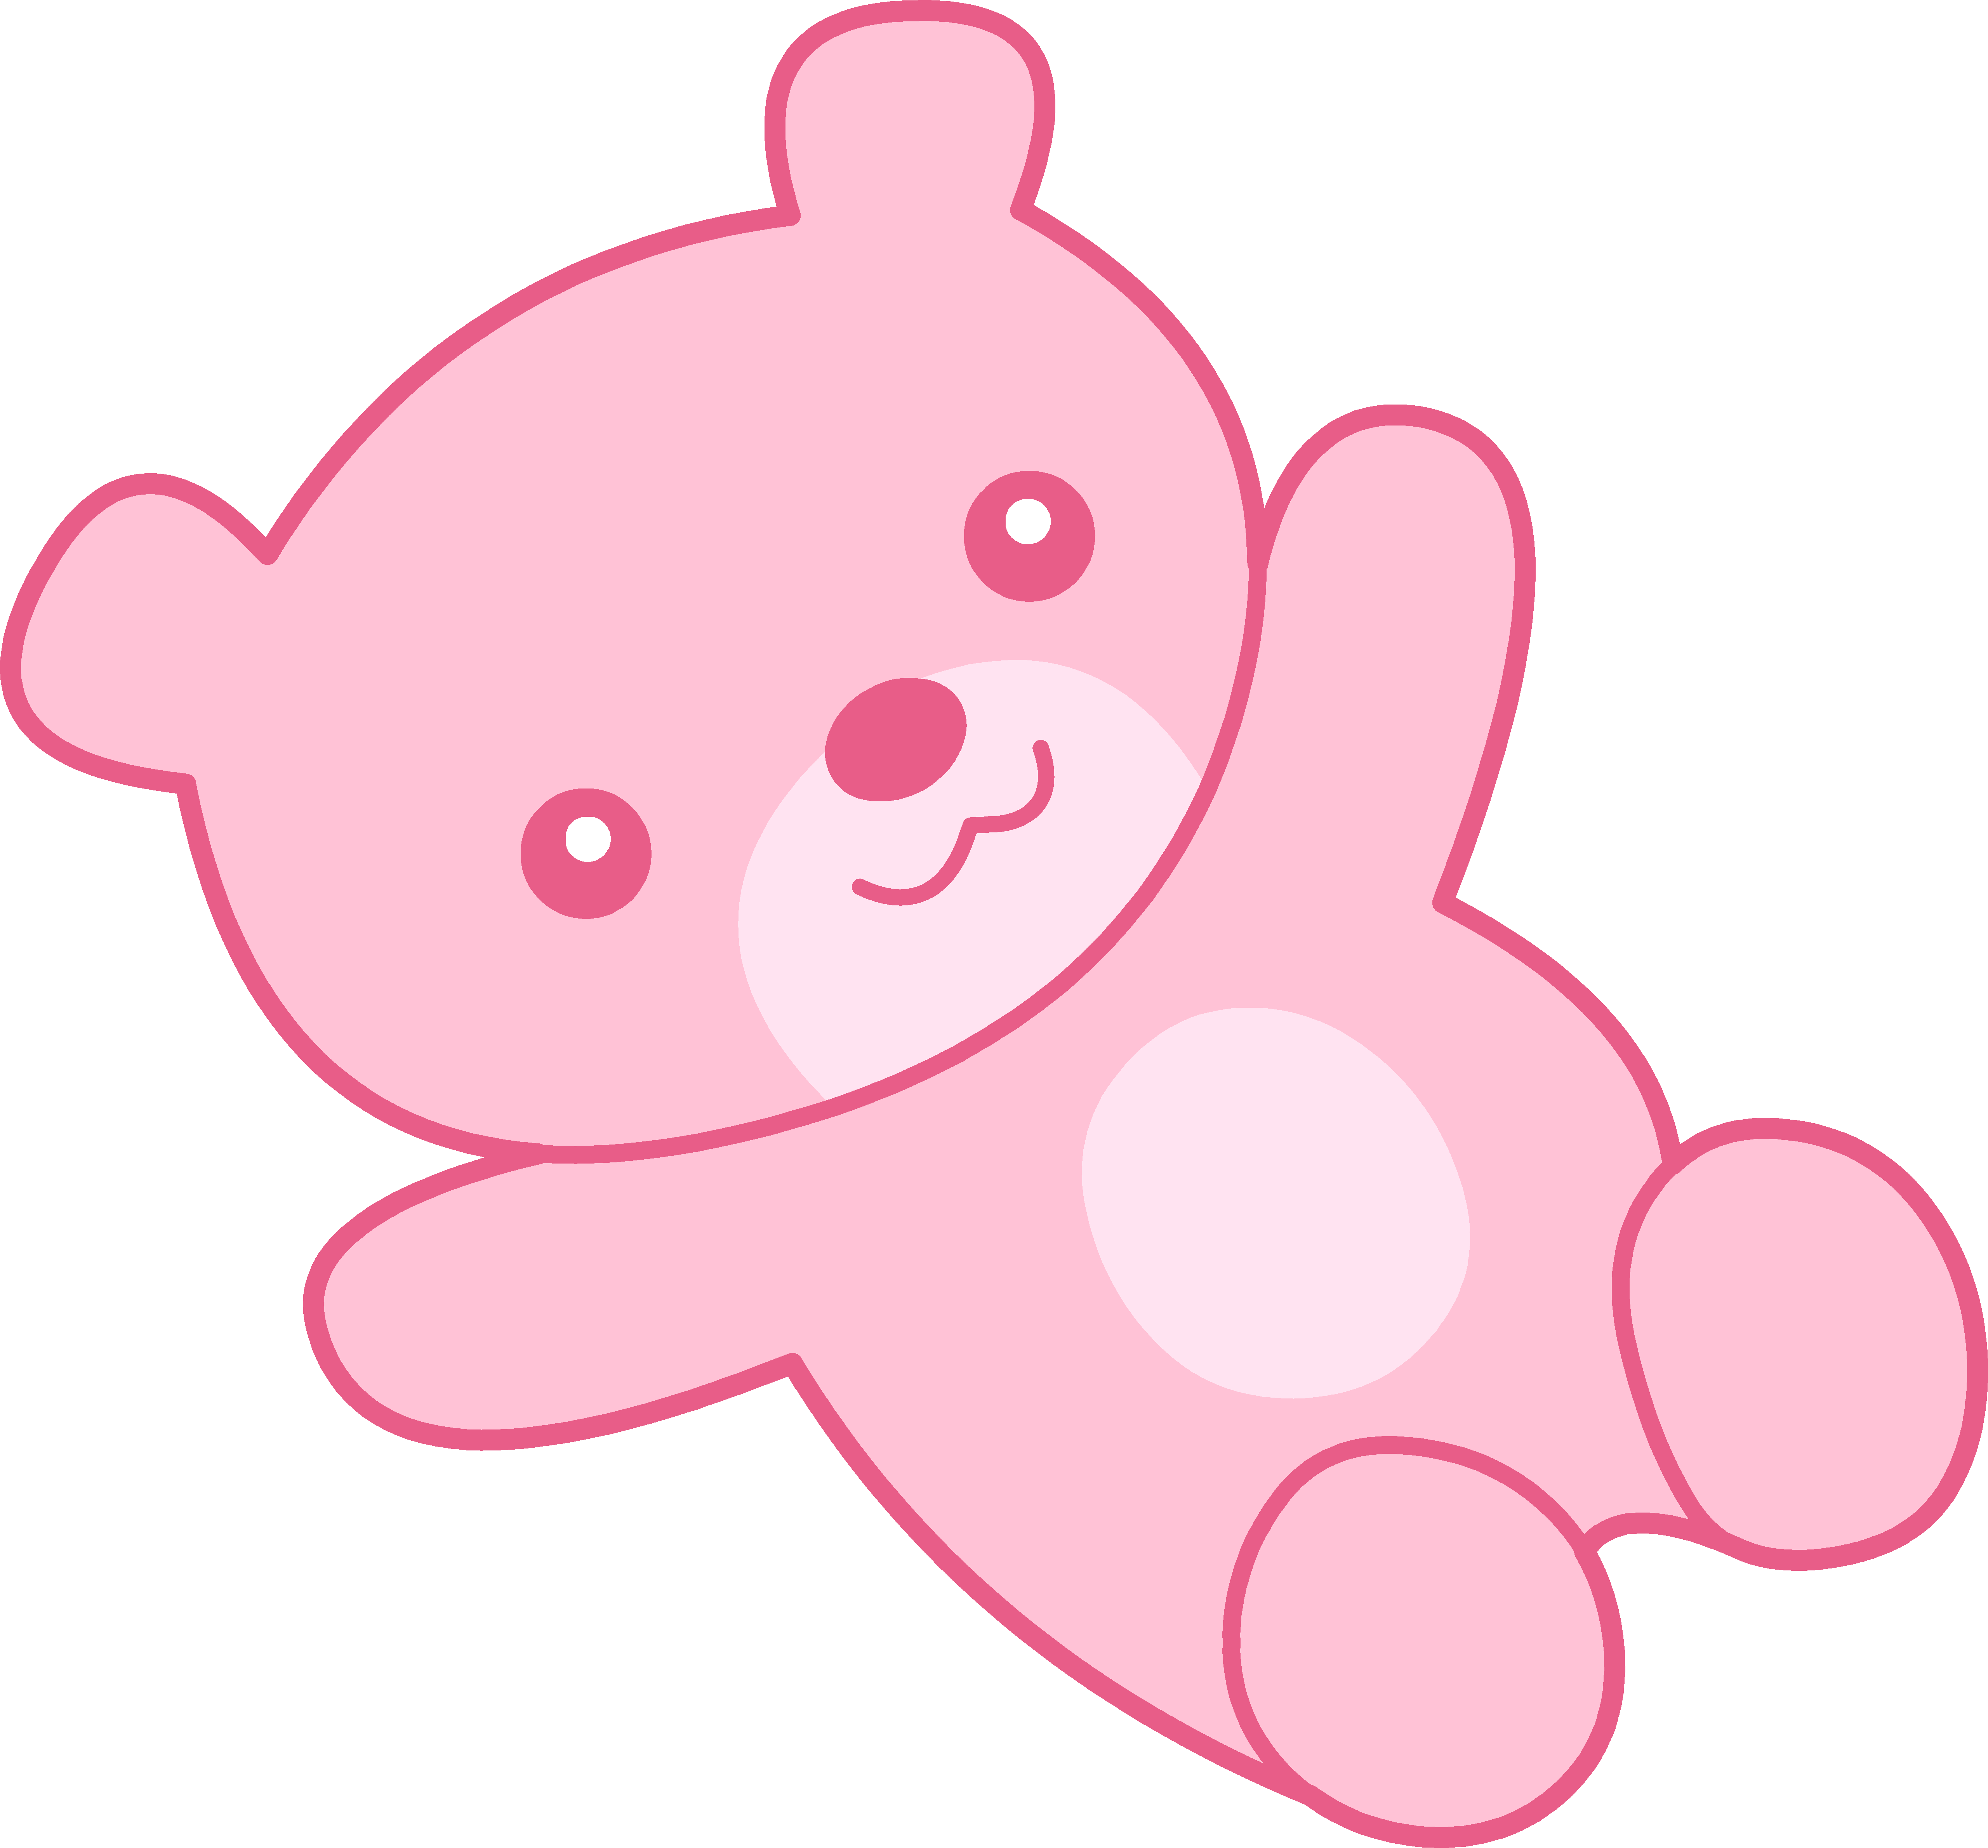 Cute pink teddy bear clipart free clip art